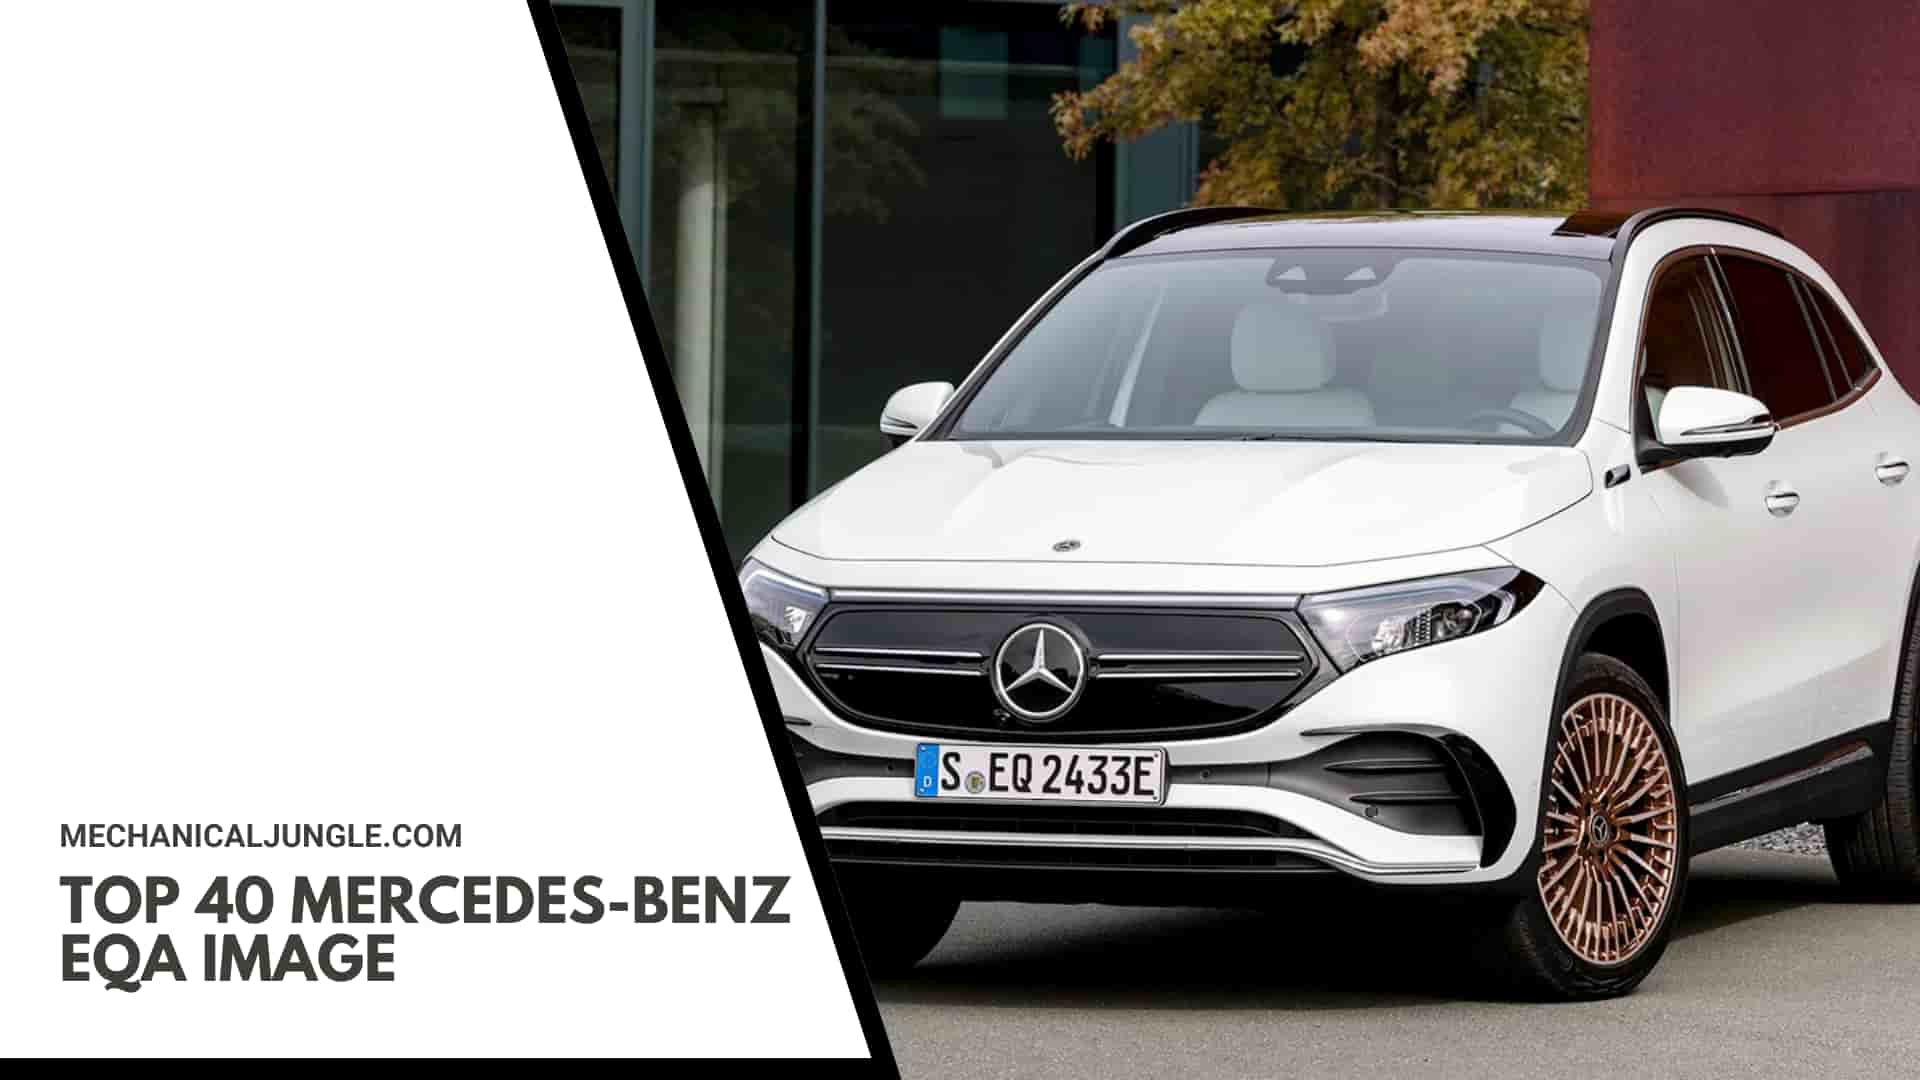 Top 40 Mercedes-Benz EQA Image